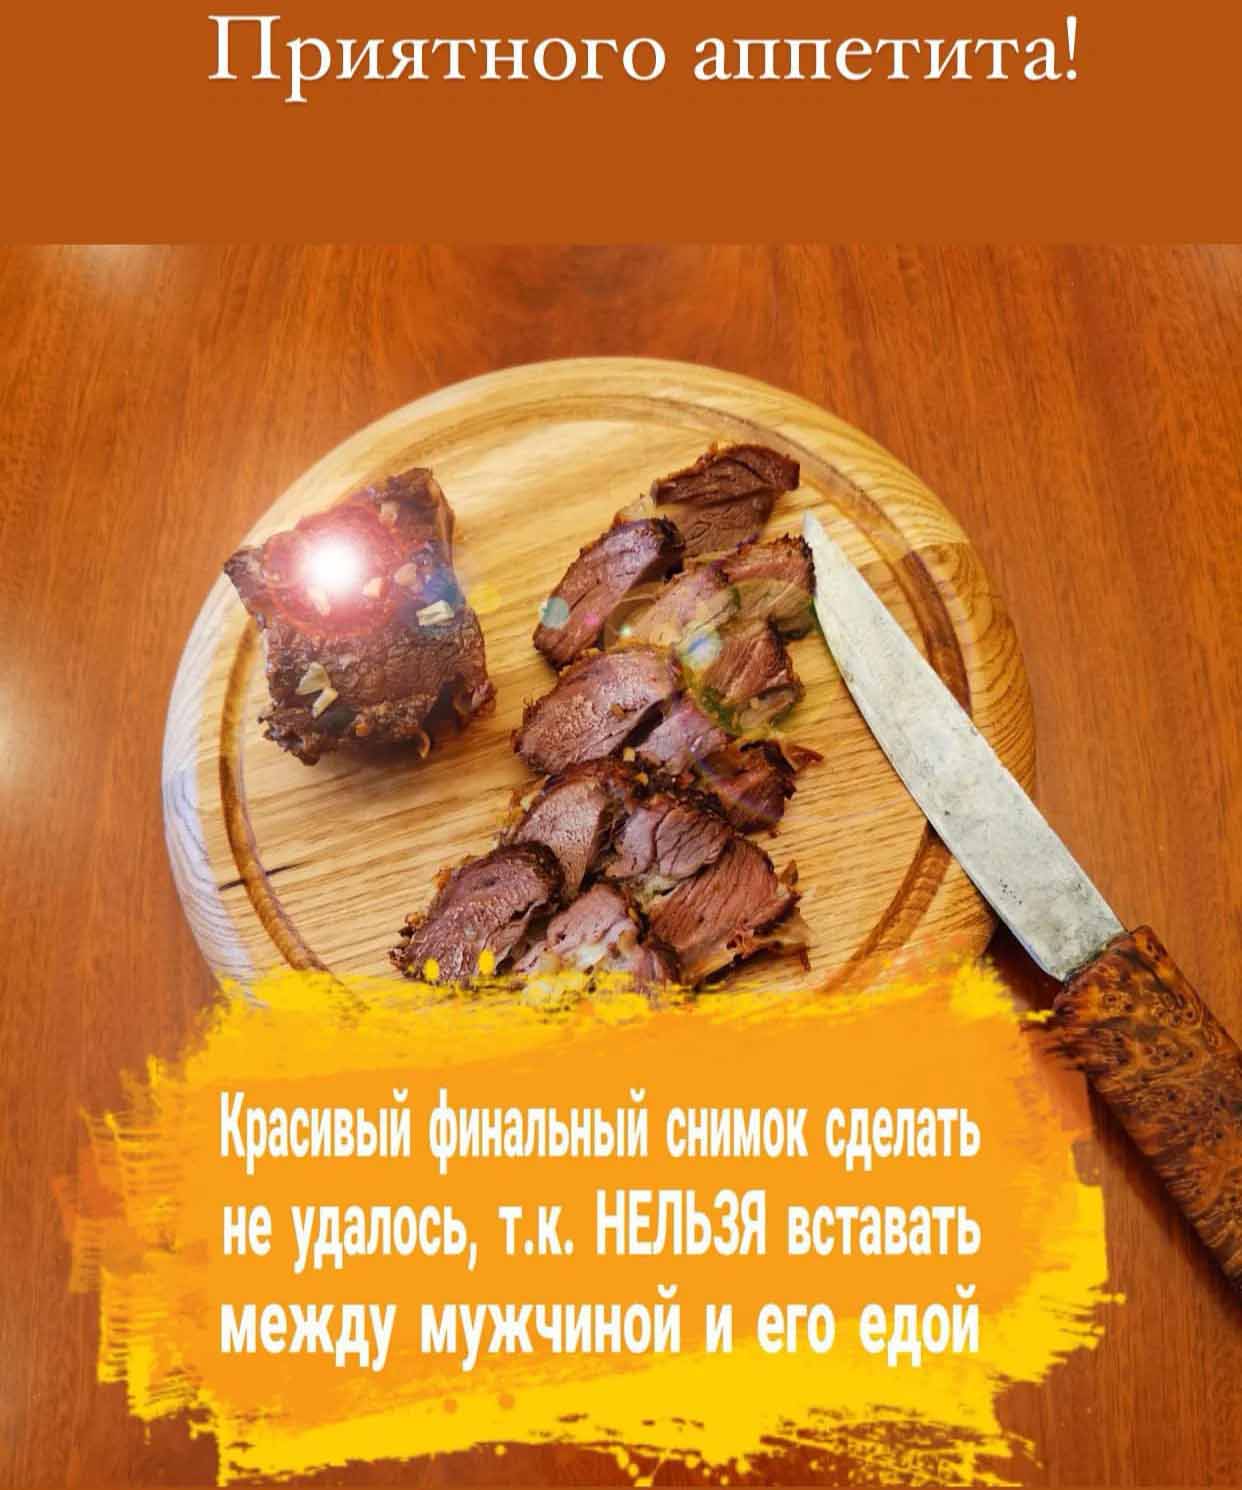 Рецепт от мэра Якутска